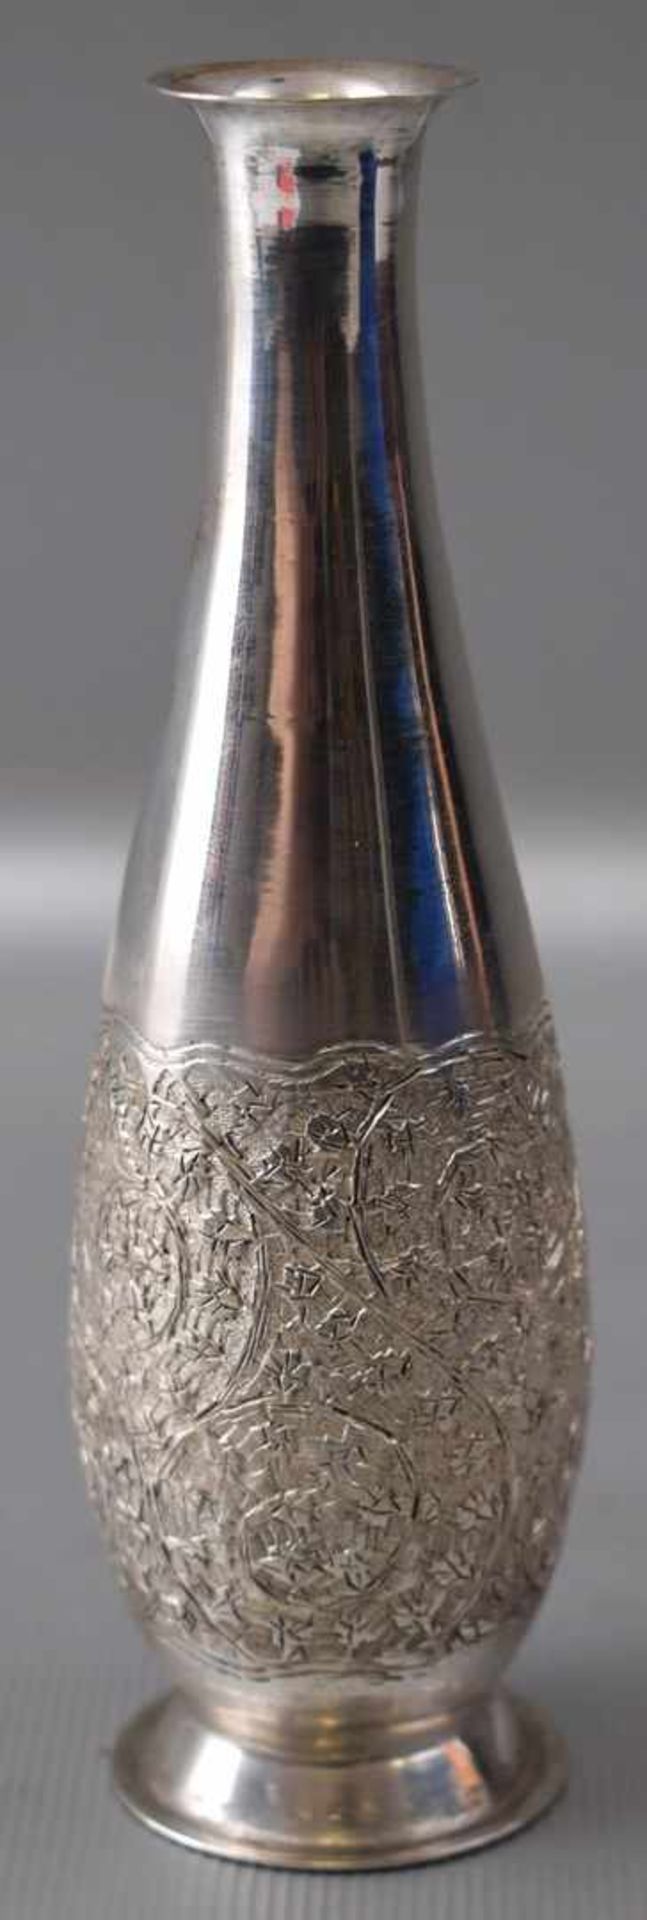 Vase leicht gebaucht, Wandung mit Ornamenten verziert, H 13 cm, 940er Silber